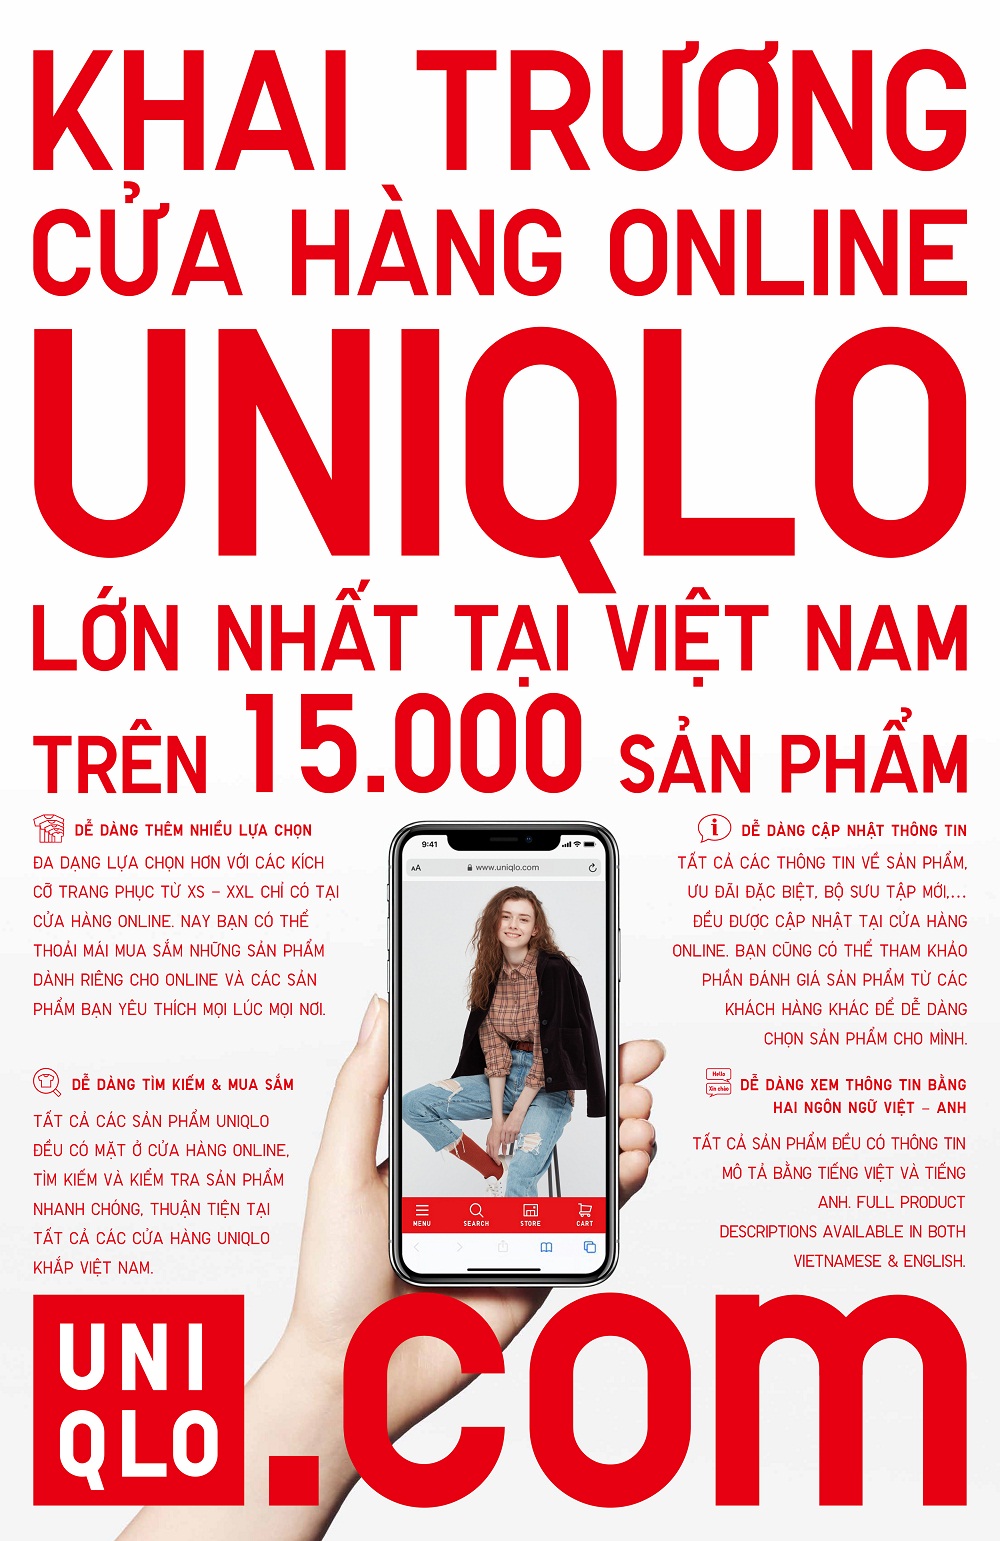 UNIQLO Saigon Centre sẵn sàng chào đón khách hàng với loạt trải nghiệm mua  sắm độc đáo